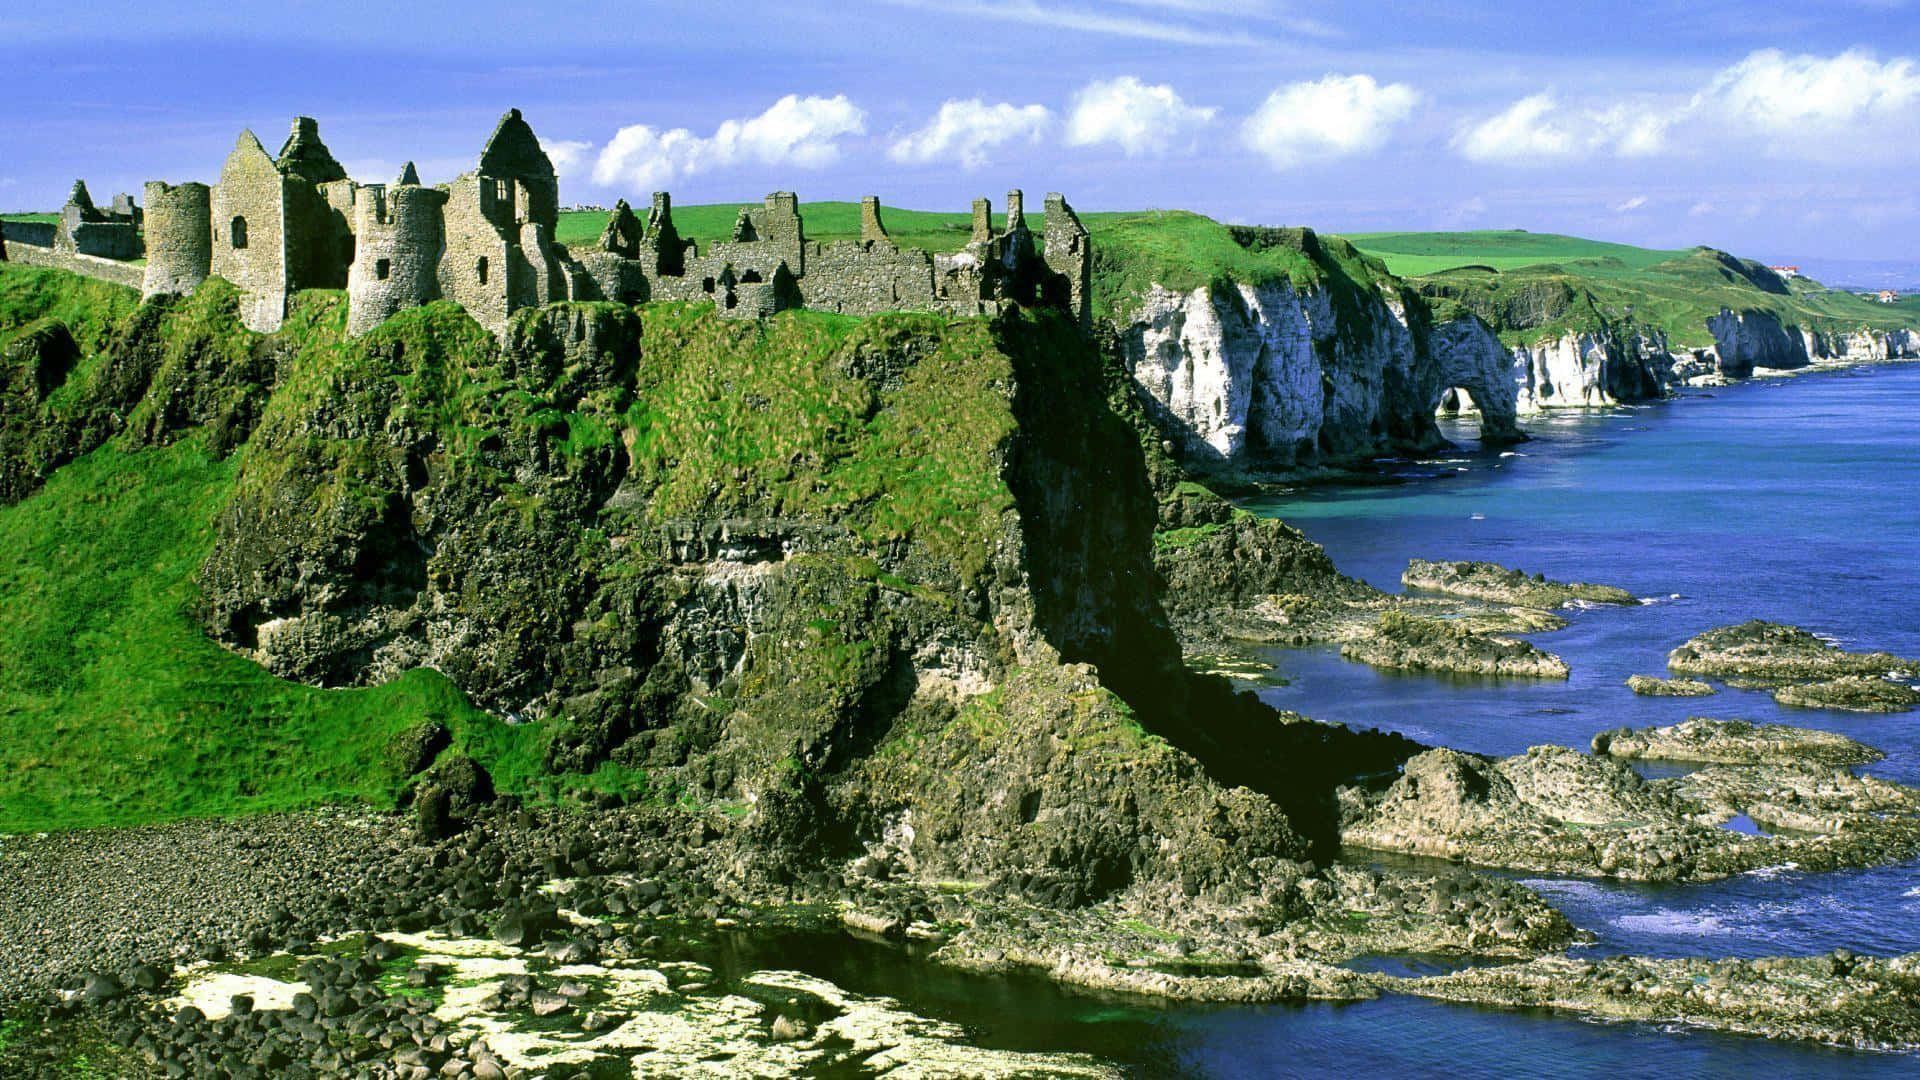 Hình nền desktop Ireland: Làm mới màn hình của bạn với hình nền desktop Ireland tuyệt đẹp này. Bạn sẽ có cơ hội được chiêm ngưỡng hình ảnh tuyệt đẹp của đất nước xanh ngắt này, từ những con đường đèo hấp dẫn đến những cánh đồng xanh mướt.